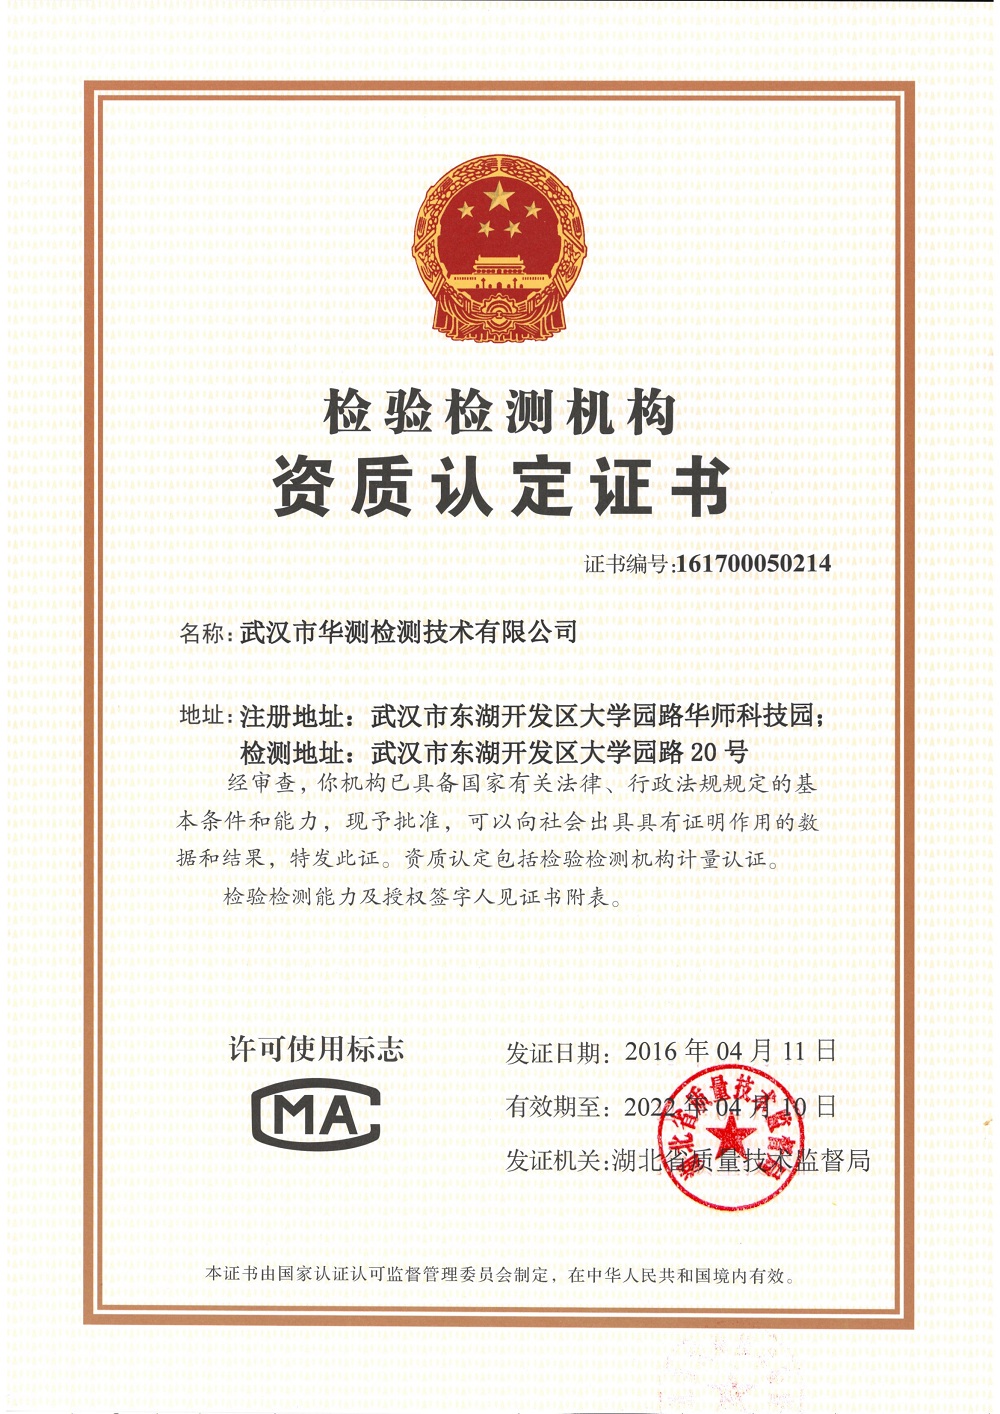 Wuhan CMAF Certificate